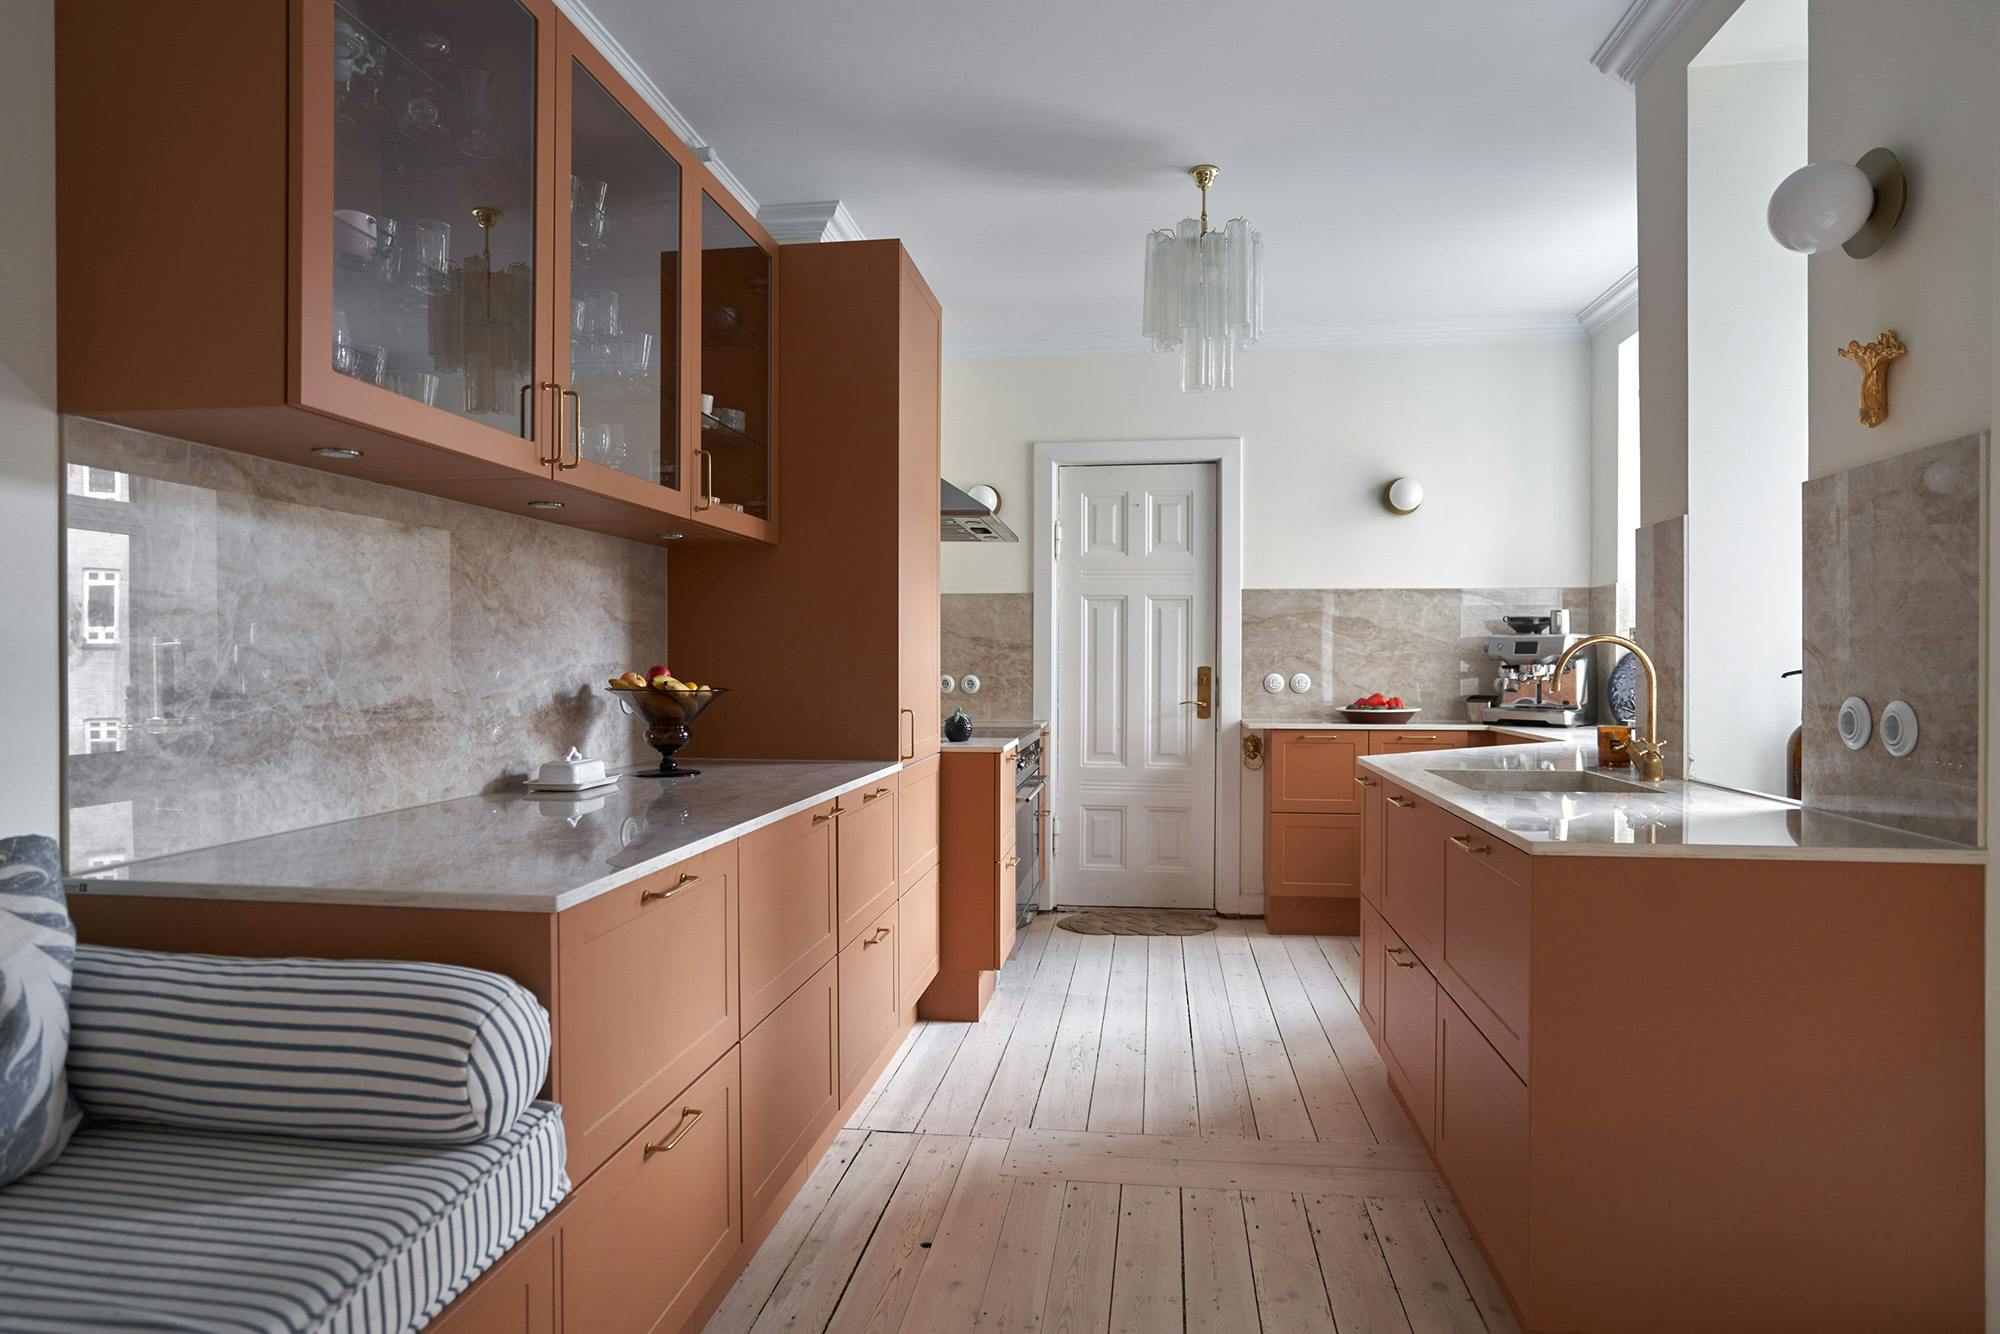 Numéro d'image 34 de la section actuelle de DKTN Arga creates an elegant atmosphere in this open plan kitchen with a minimalist approach de Cosentino France